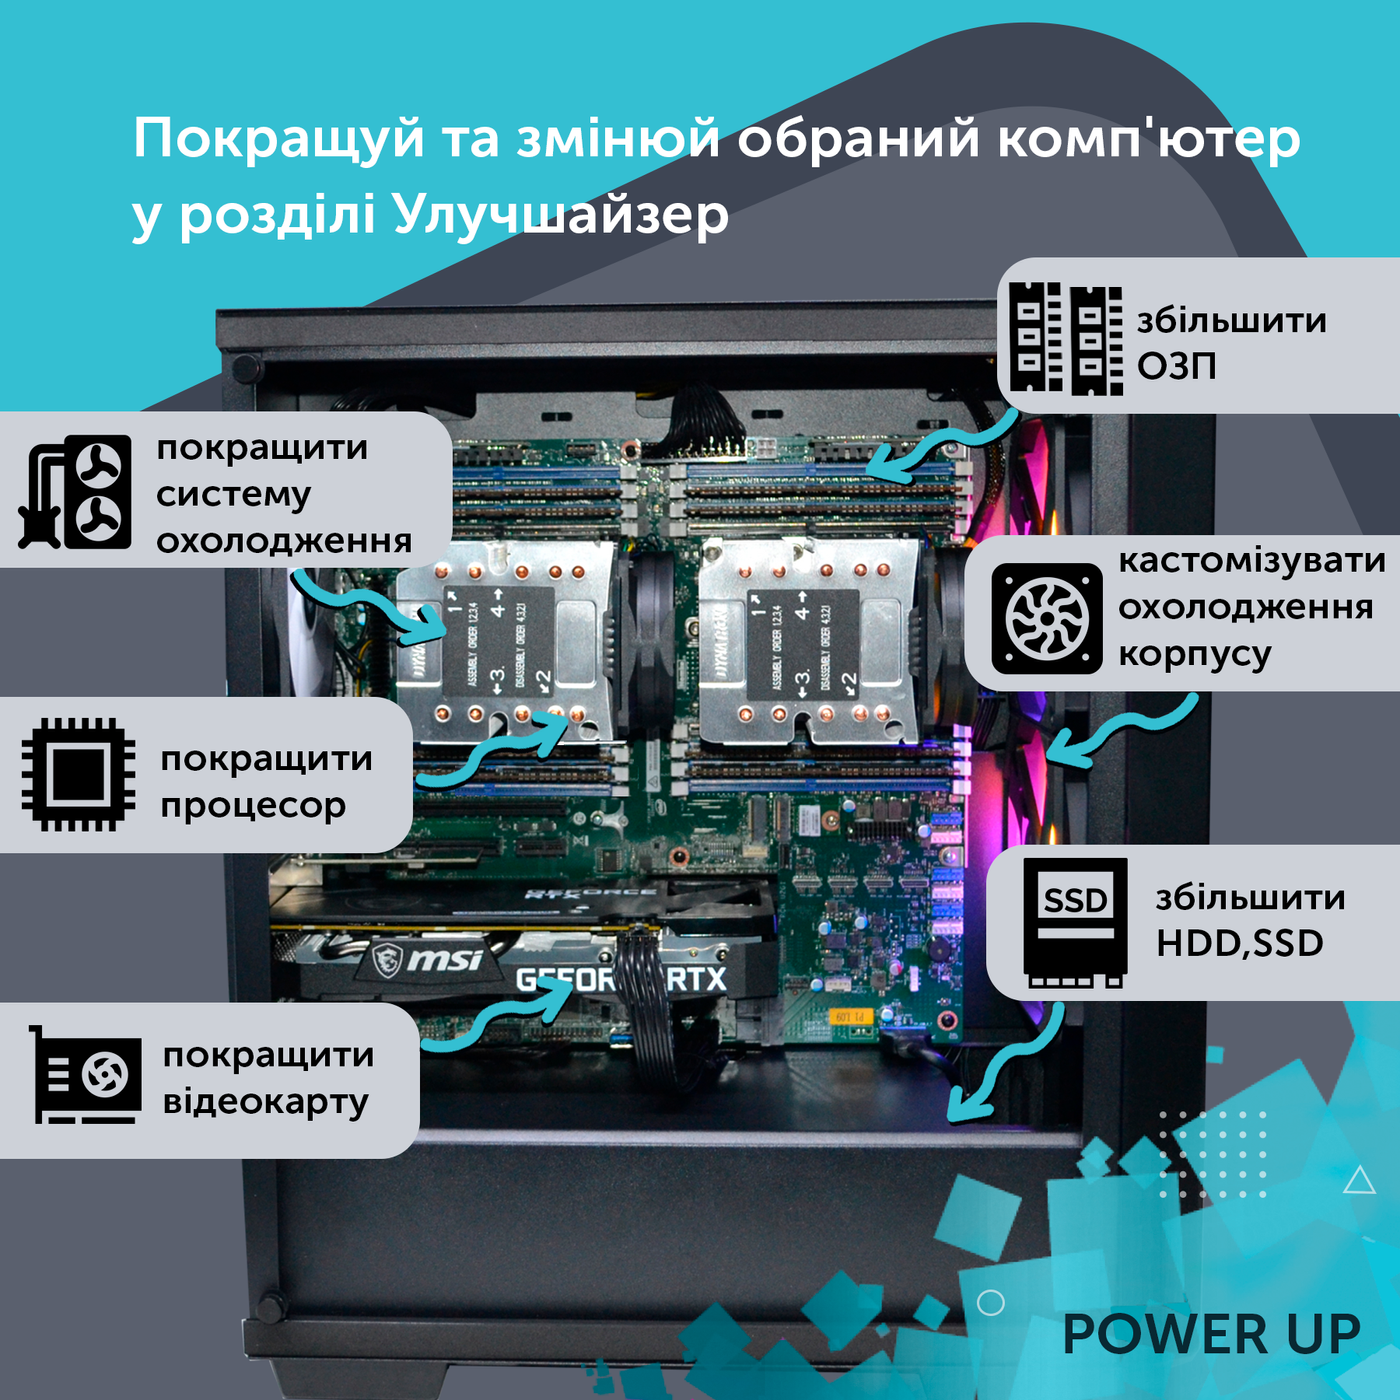 Двухпроцессорная рабочая станция PowerUp #367 Xeon E5 2673 v4 x2/256 GB/SSD 2TB/GeForce RTX 3060 12GB